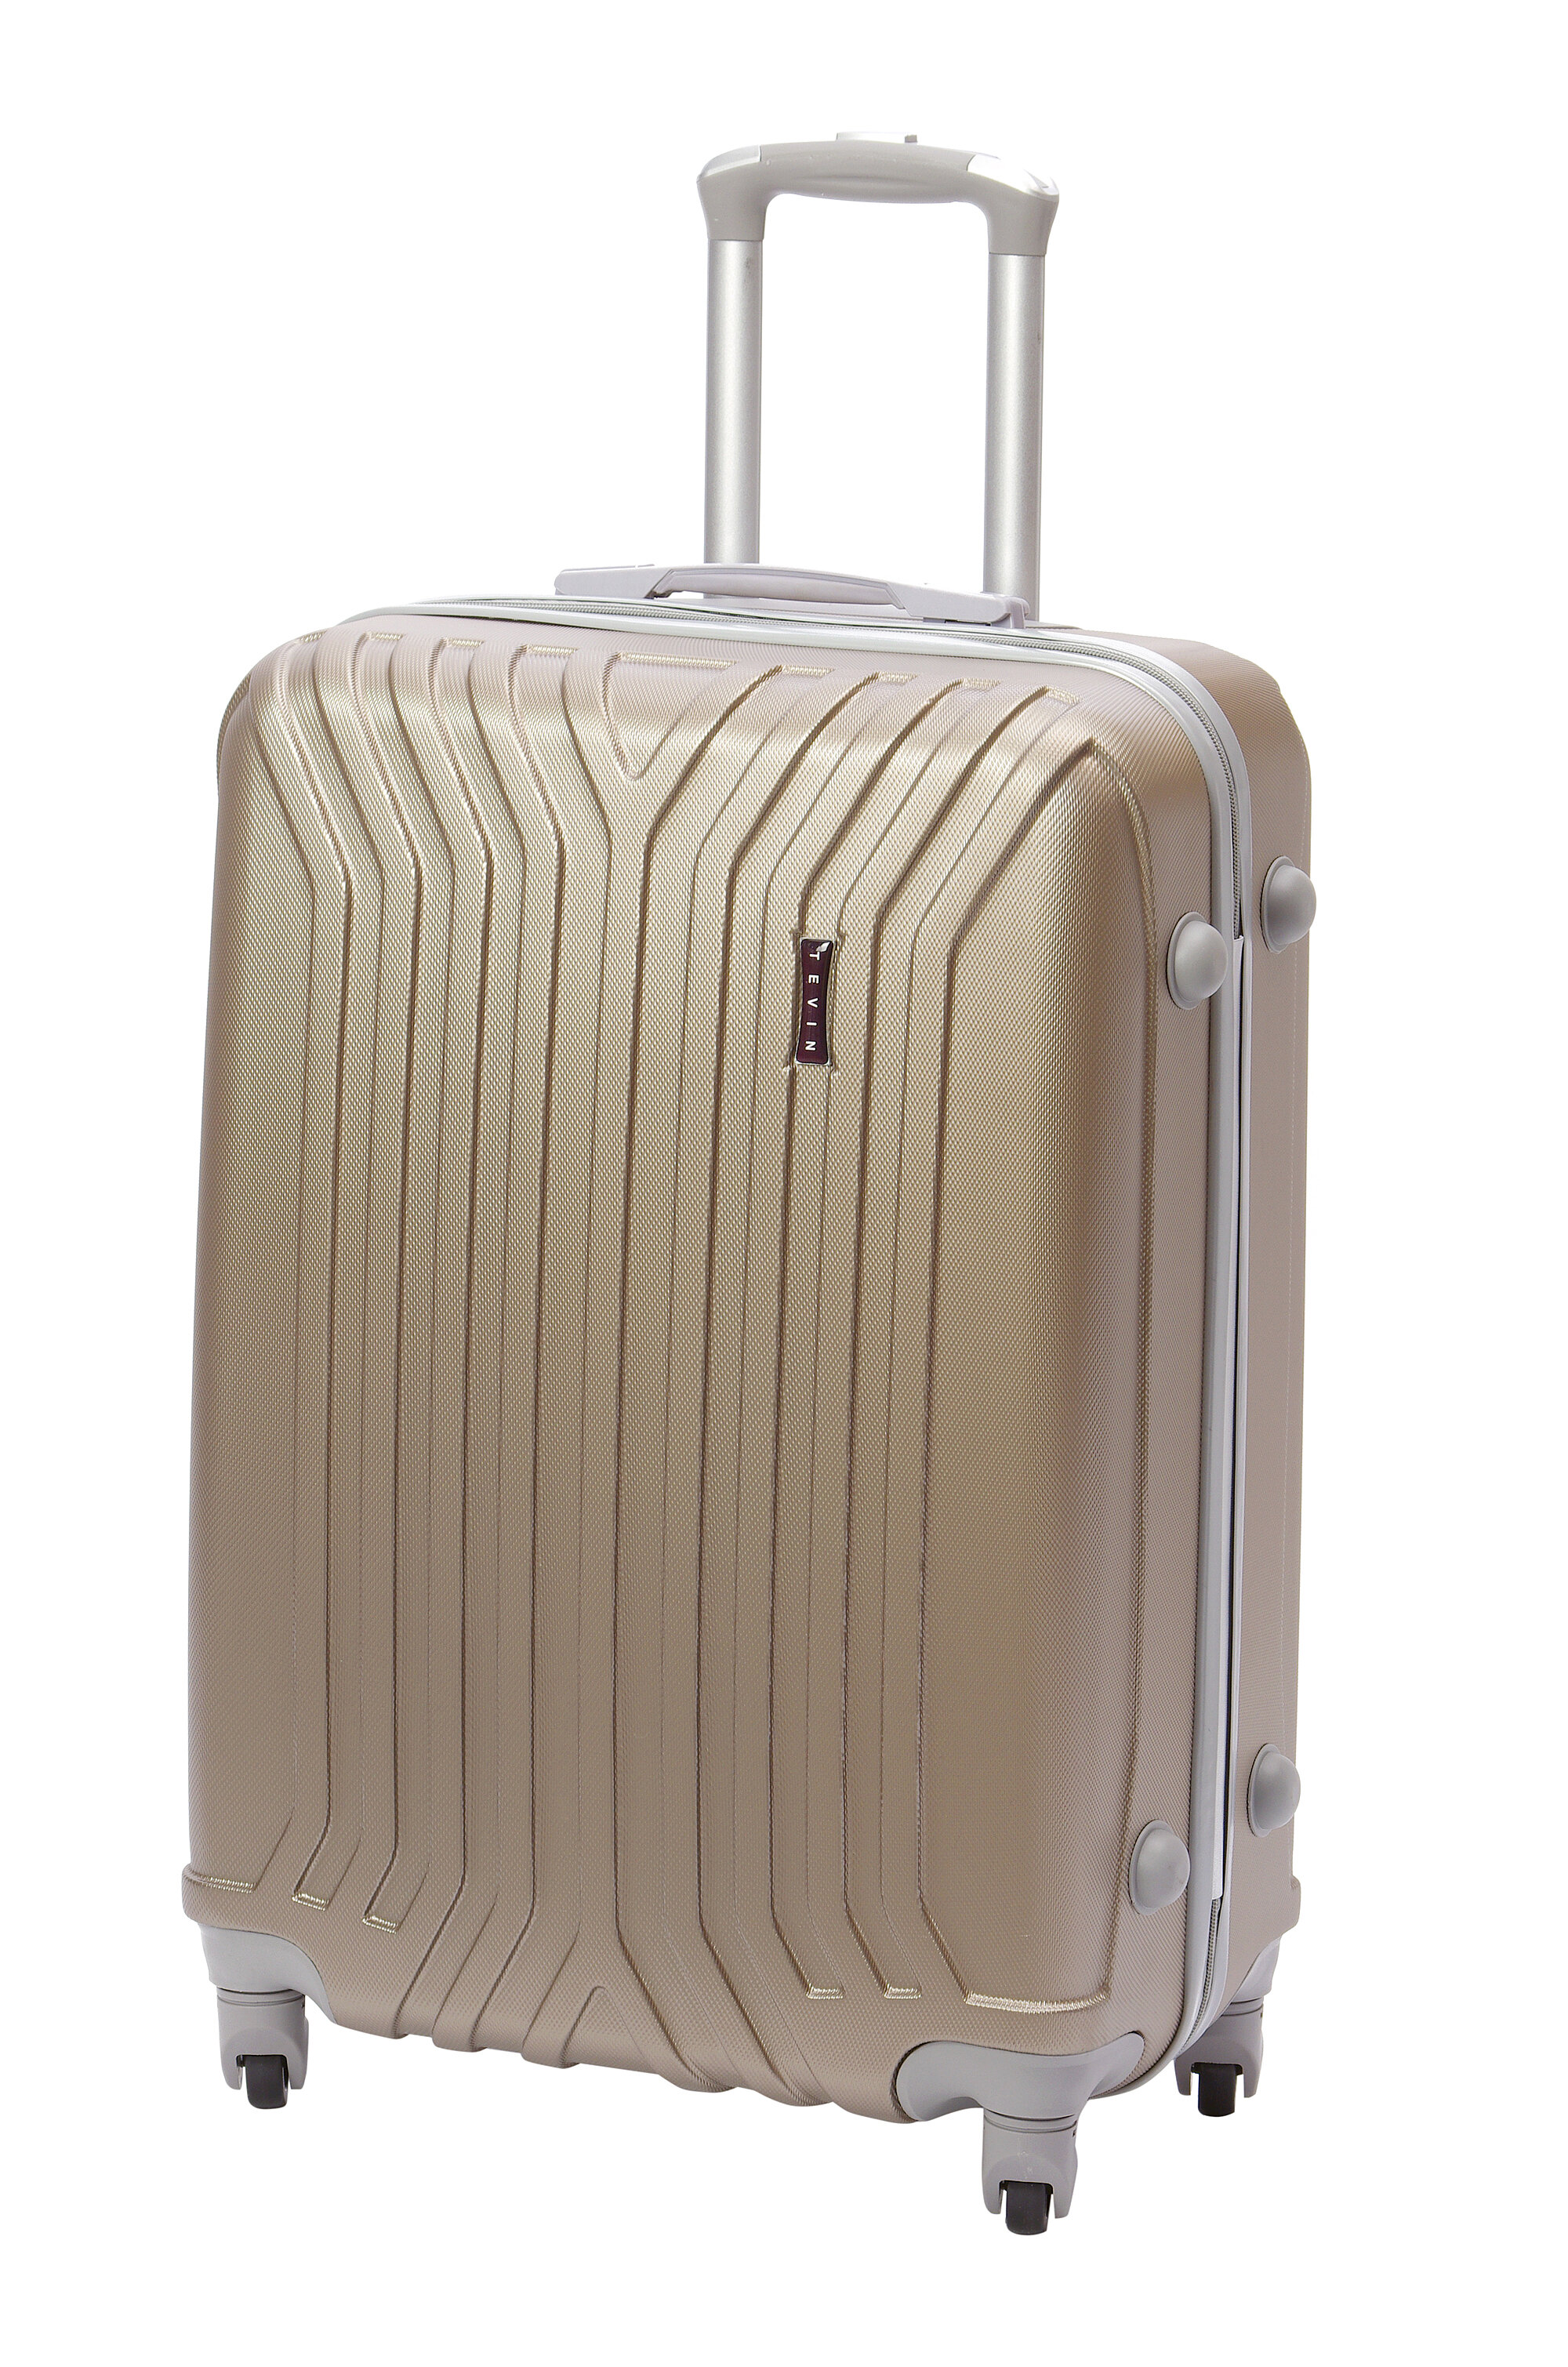 Чемодан на колесах дорожный средний багаж на двоих для путешествий женский m+ Тевин размер М+ 68 см 77 л легкий 3.7 кг прочный abs пластик Золотистый